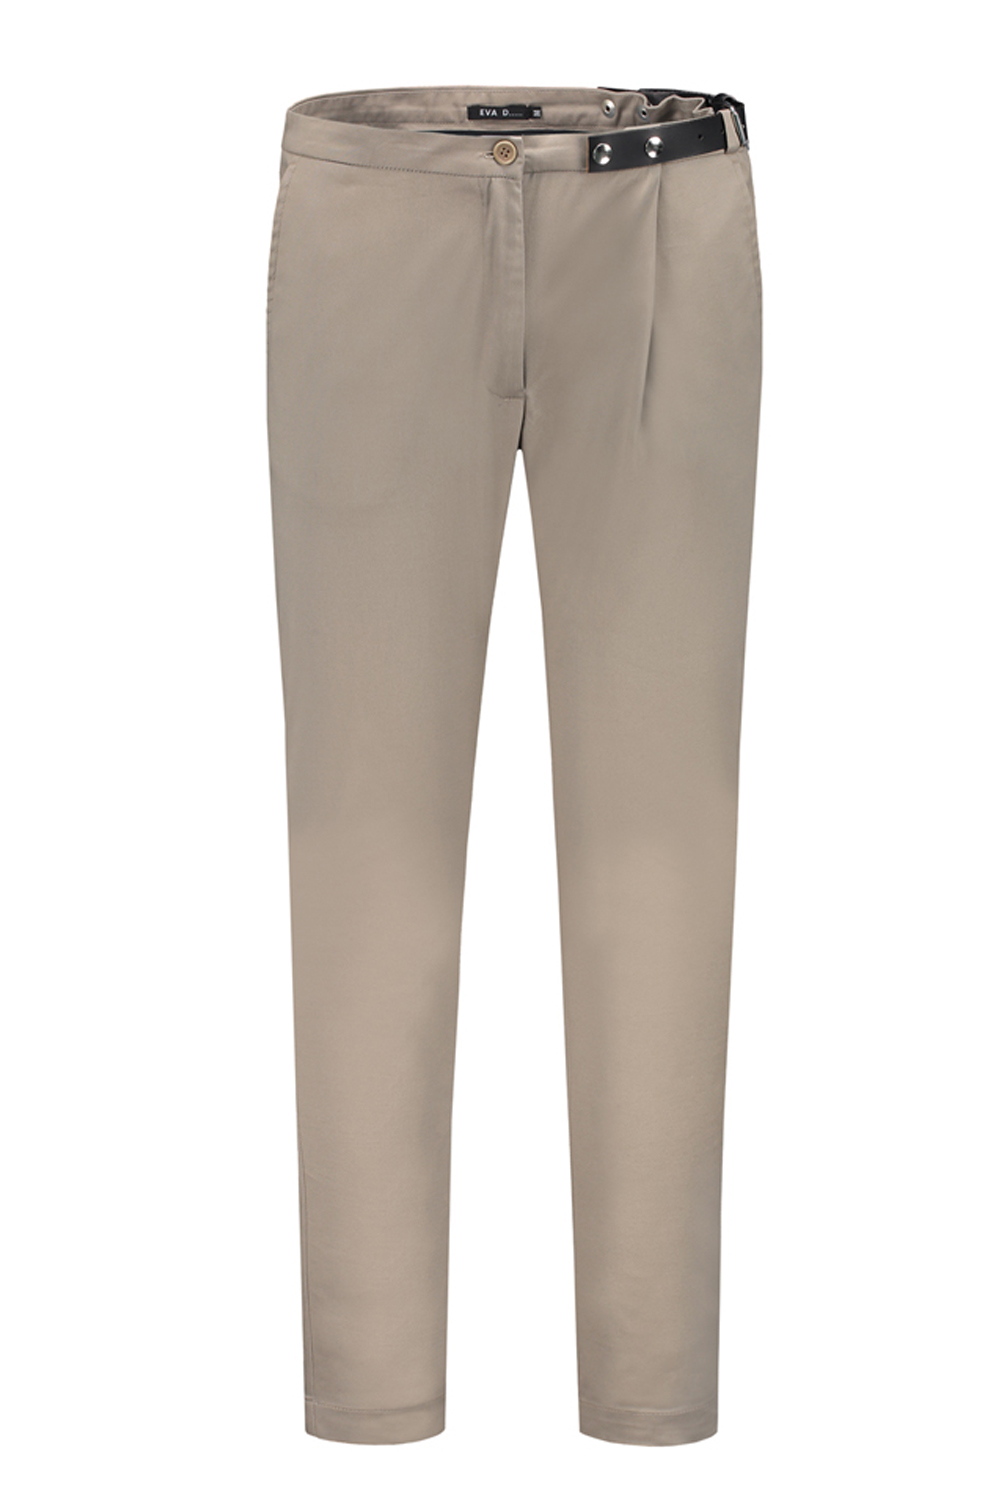 Side-belt trousers beige - Studio EVA D.